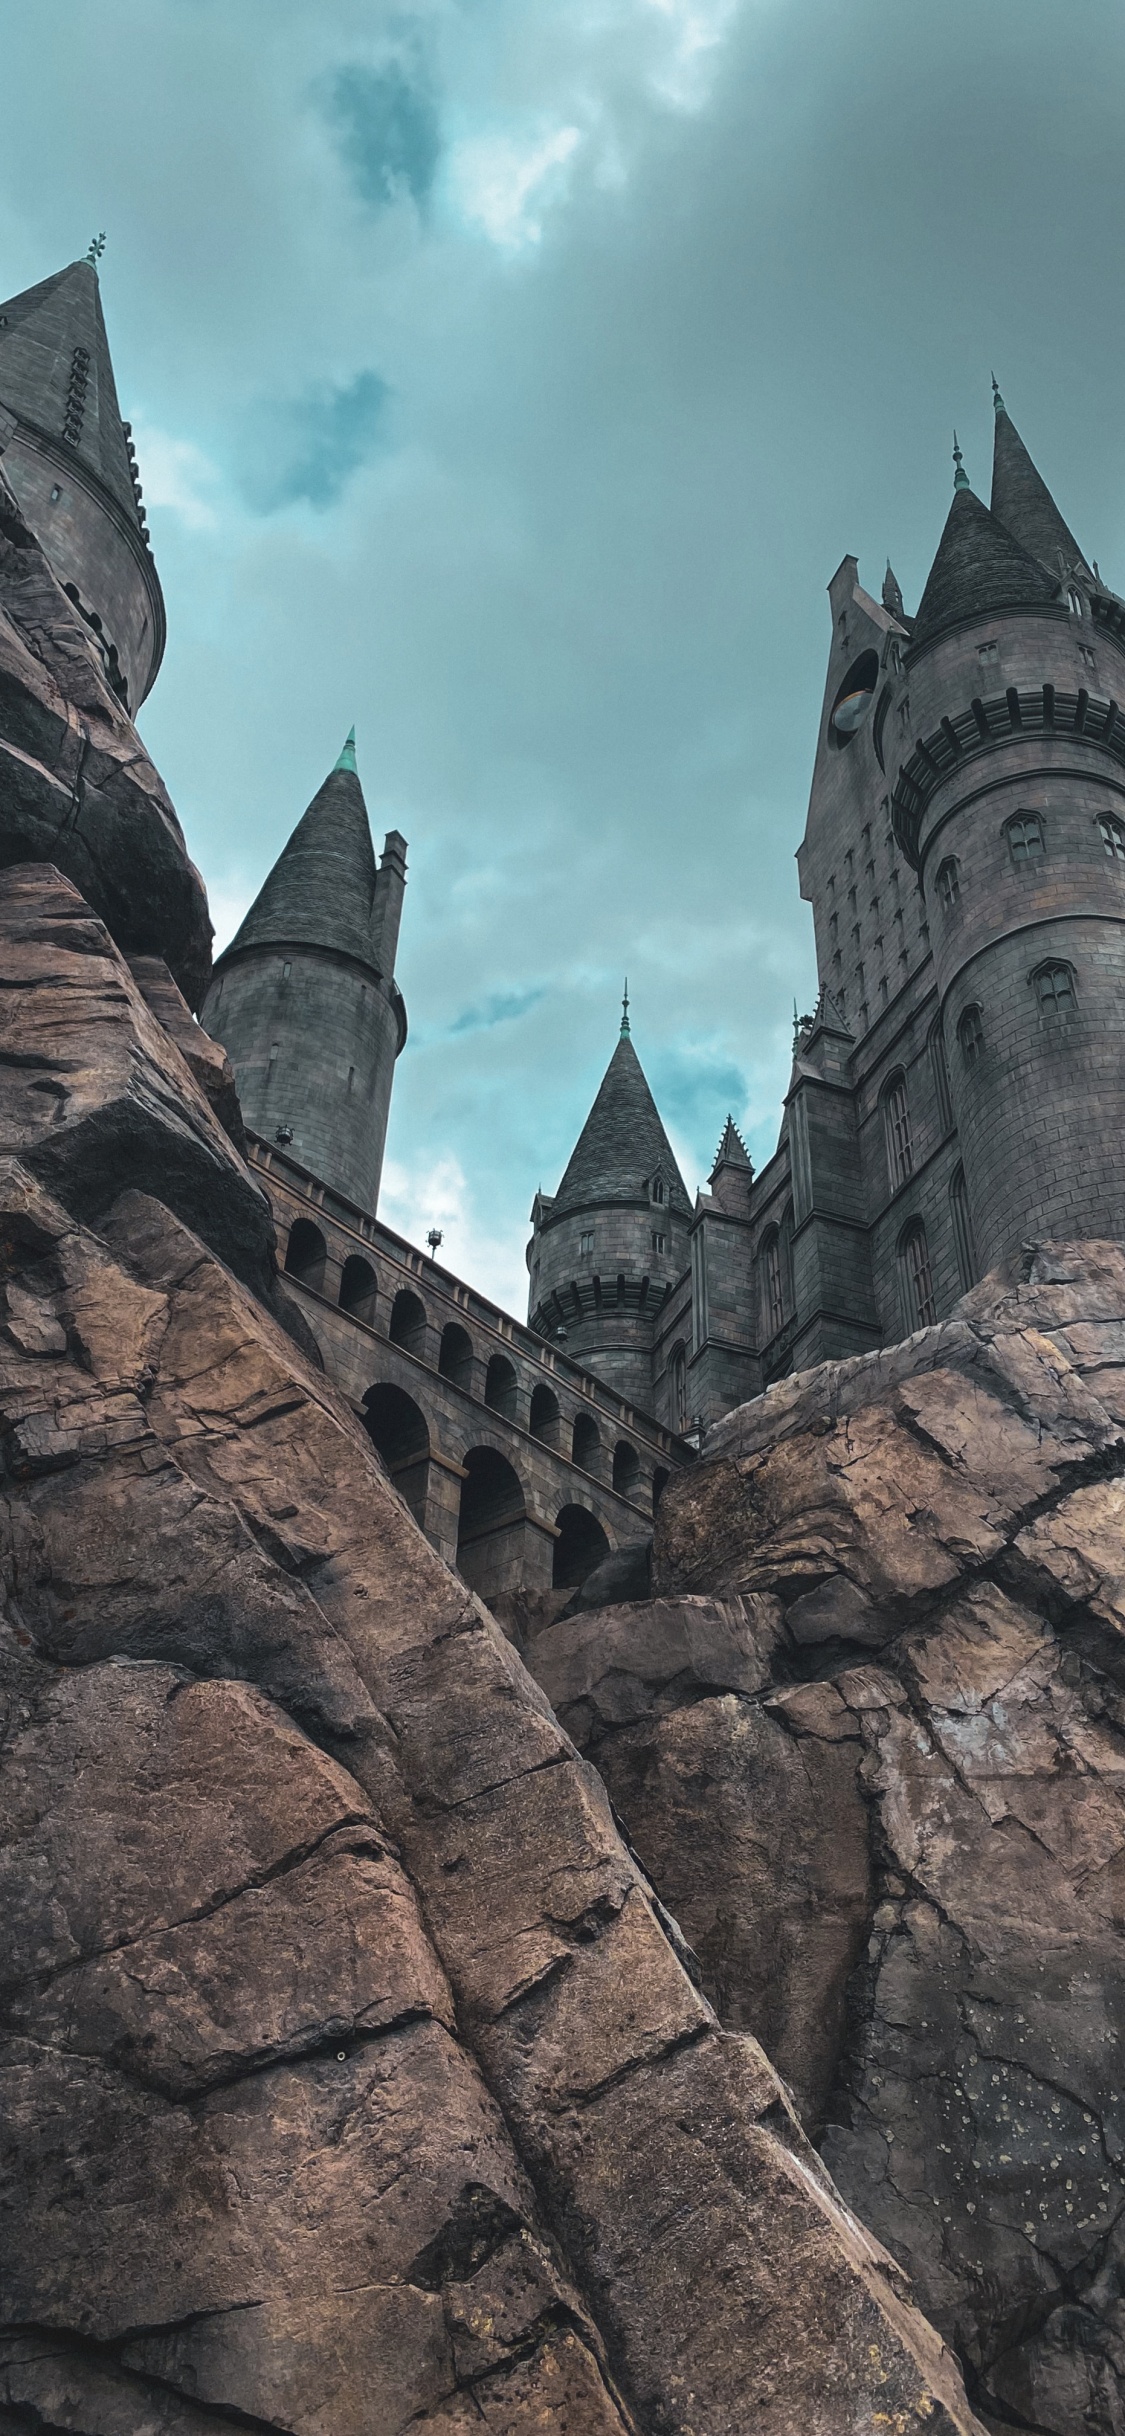 Hogwarts, 哈利*波特, 魔法世界, 斯莱特林的房子, 里程碑 壁纸 1125x2436 允许